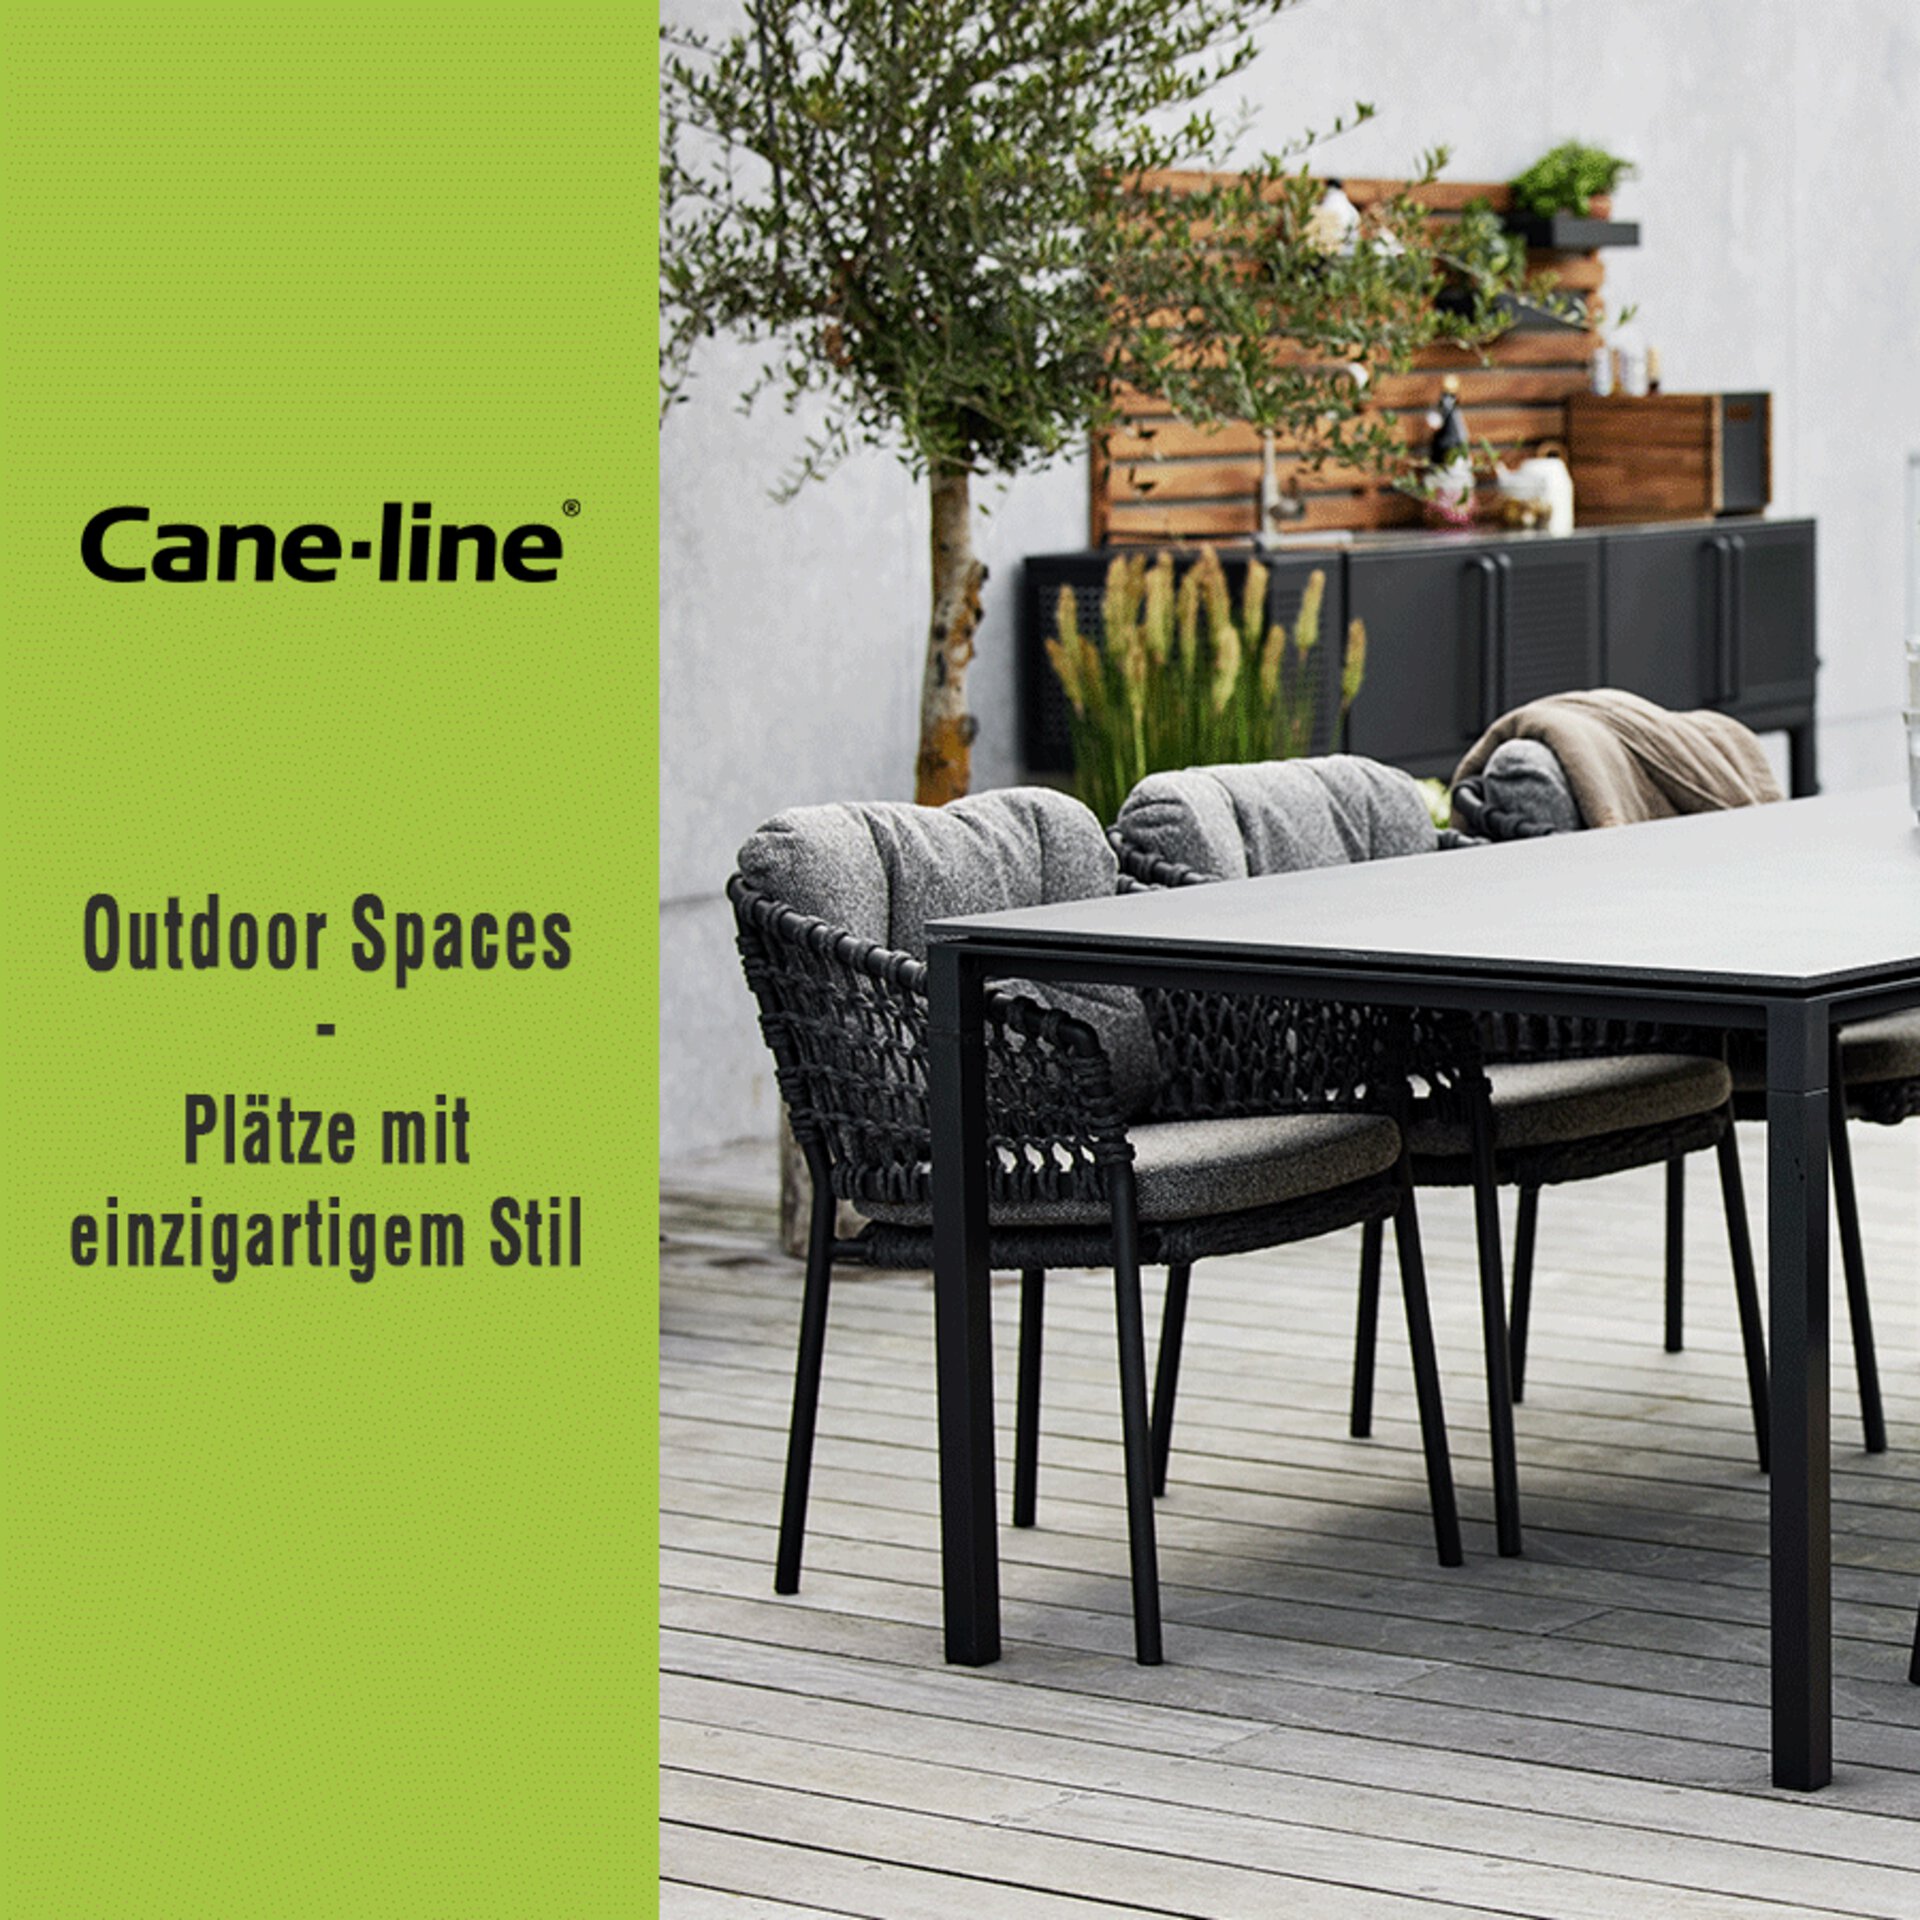 Teaserbild zur Cane-line Aktion "Outdoor-Spaces" - Designer Gartenmöbel zum Angebotspreis